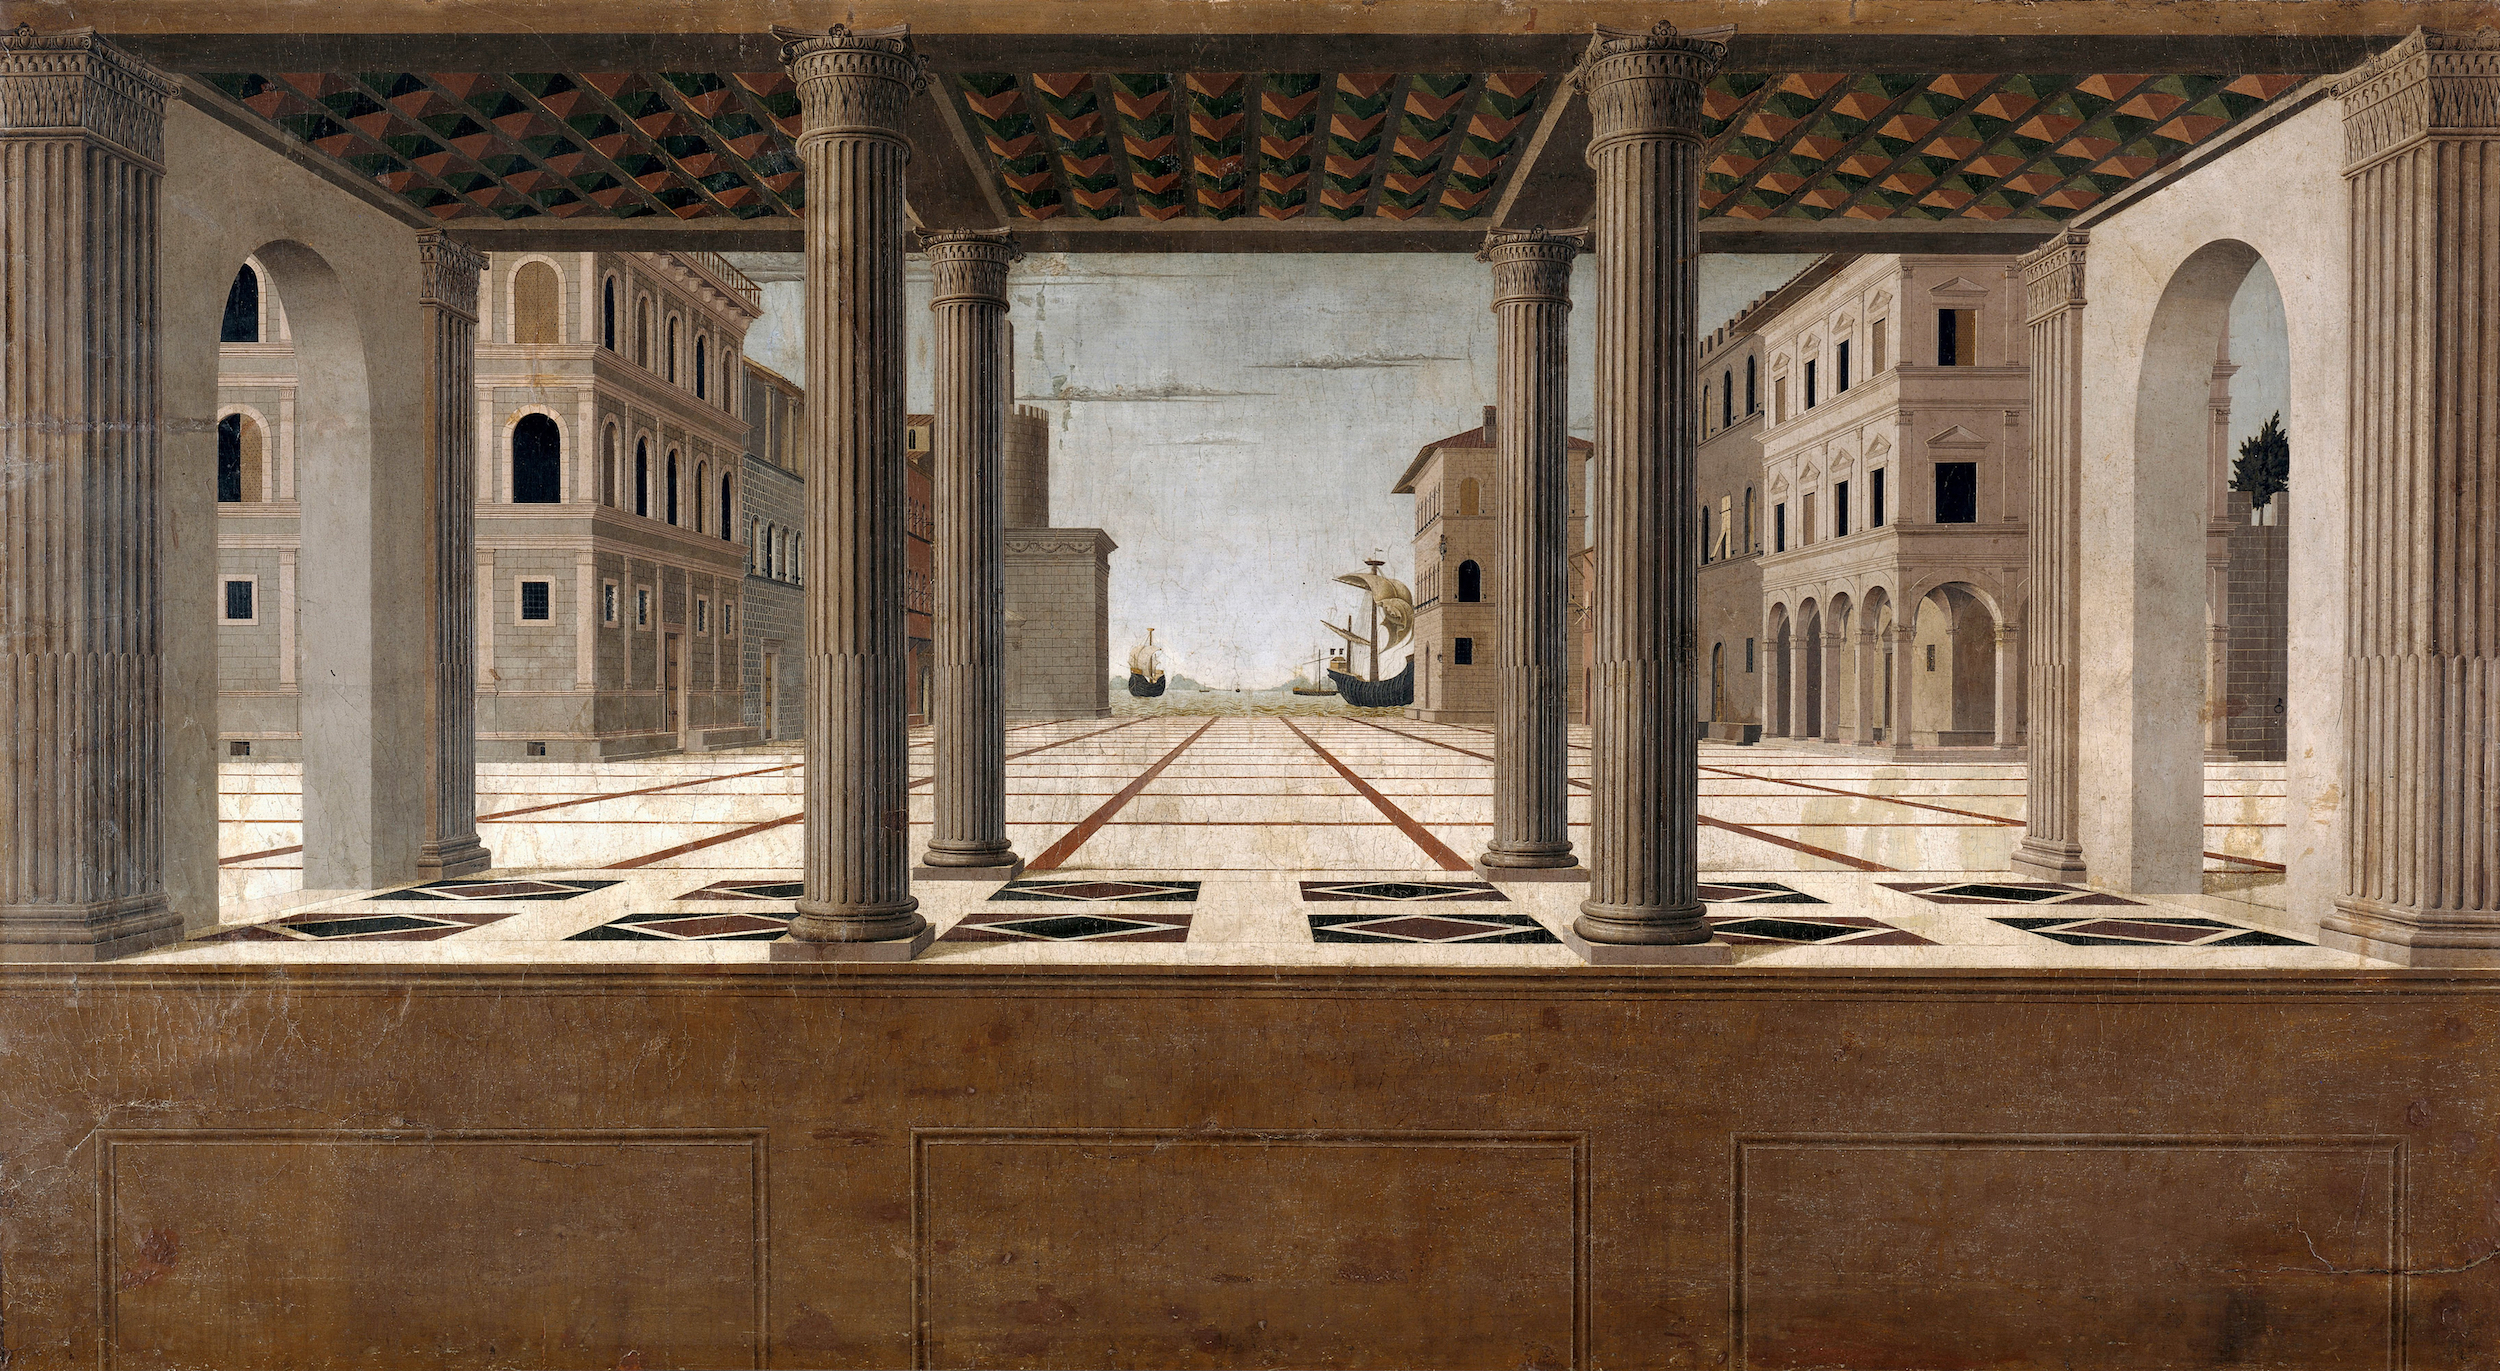 Architektonische Perspektive by Francesco di Giorgio Martini - ca. 1490 - 131 x 233 cm Gemäldegalerie